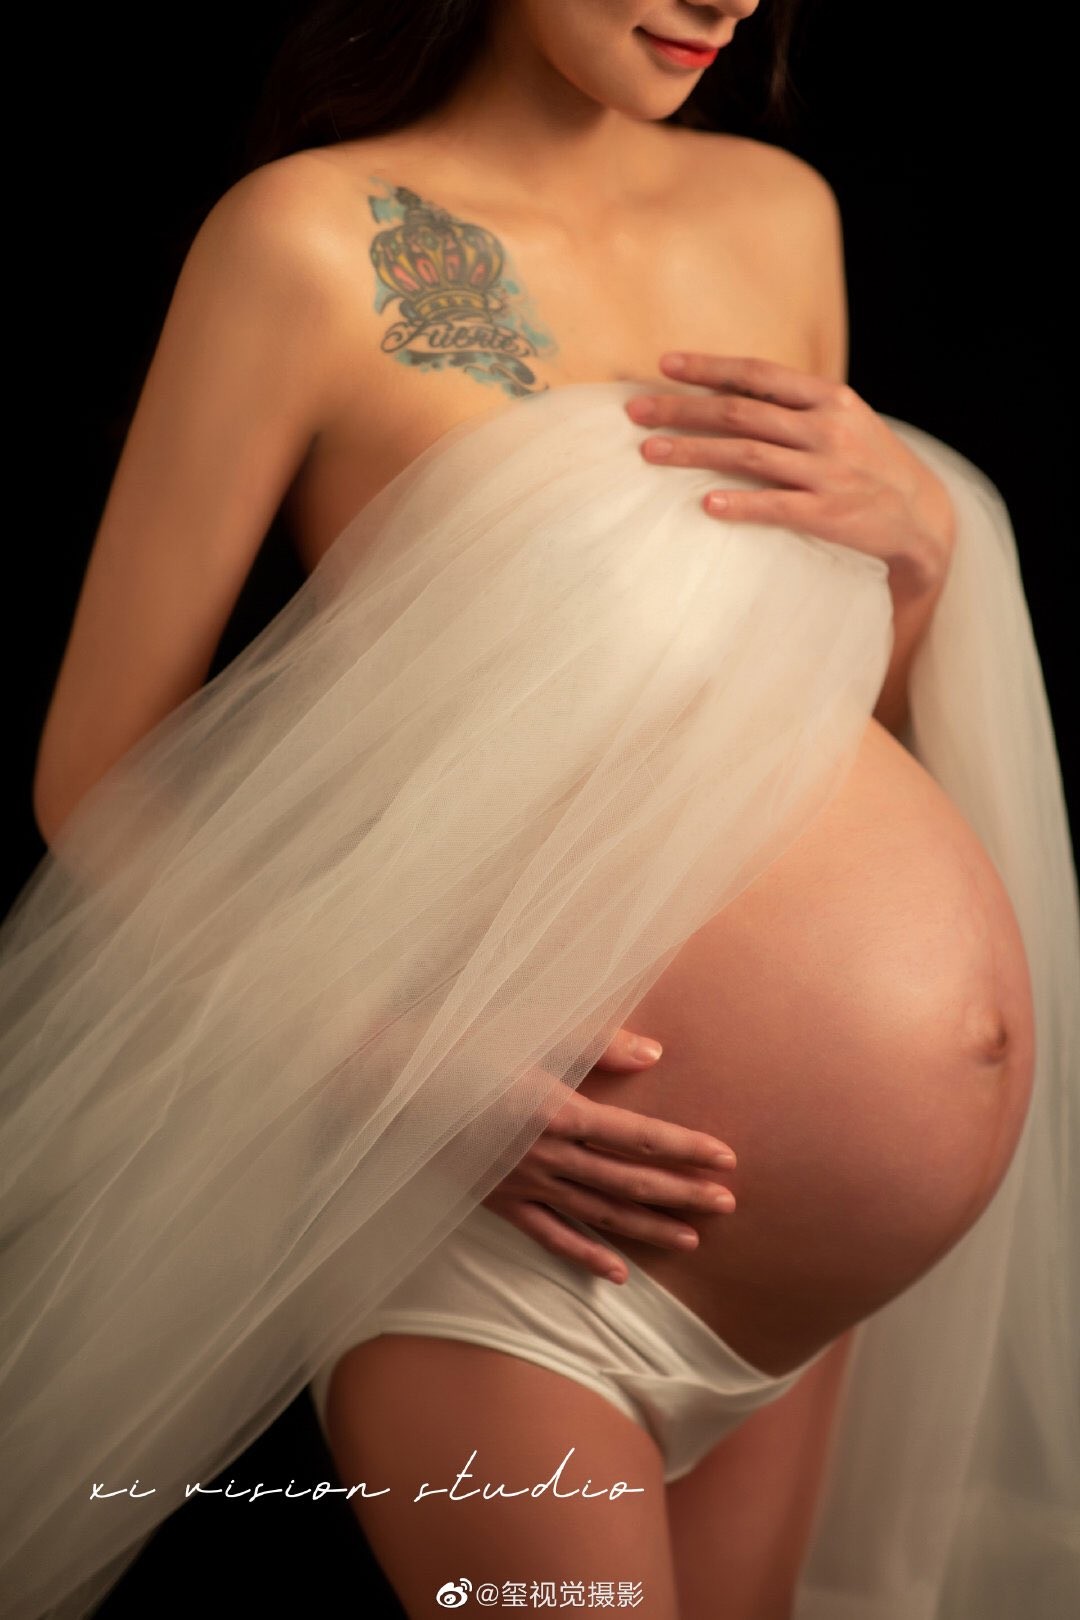 国产孕妇美图分享 纯美图不露点 042301